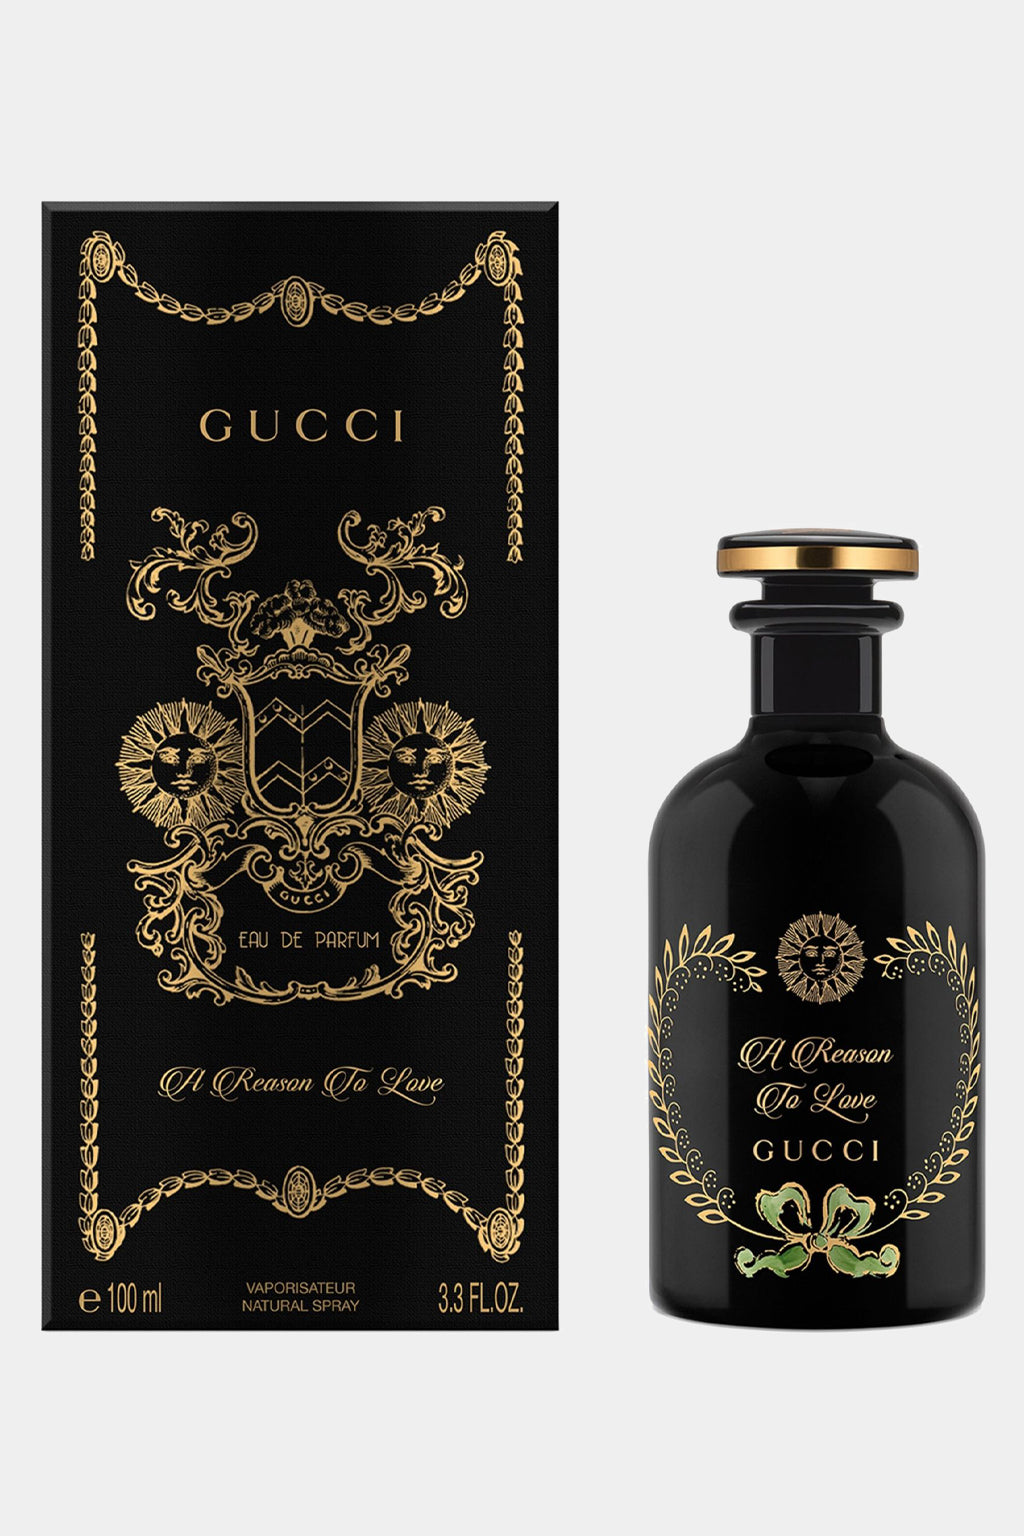 Gucci -  A Reason To Love Eau De Parfum 100ml